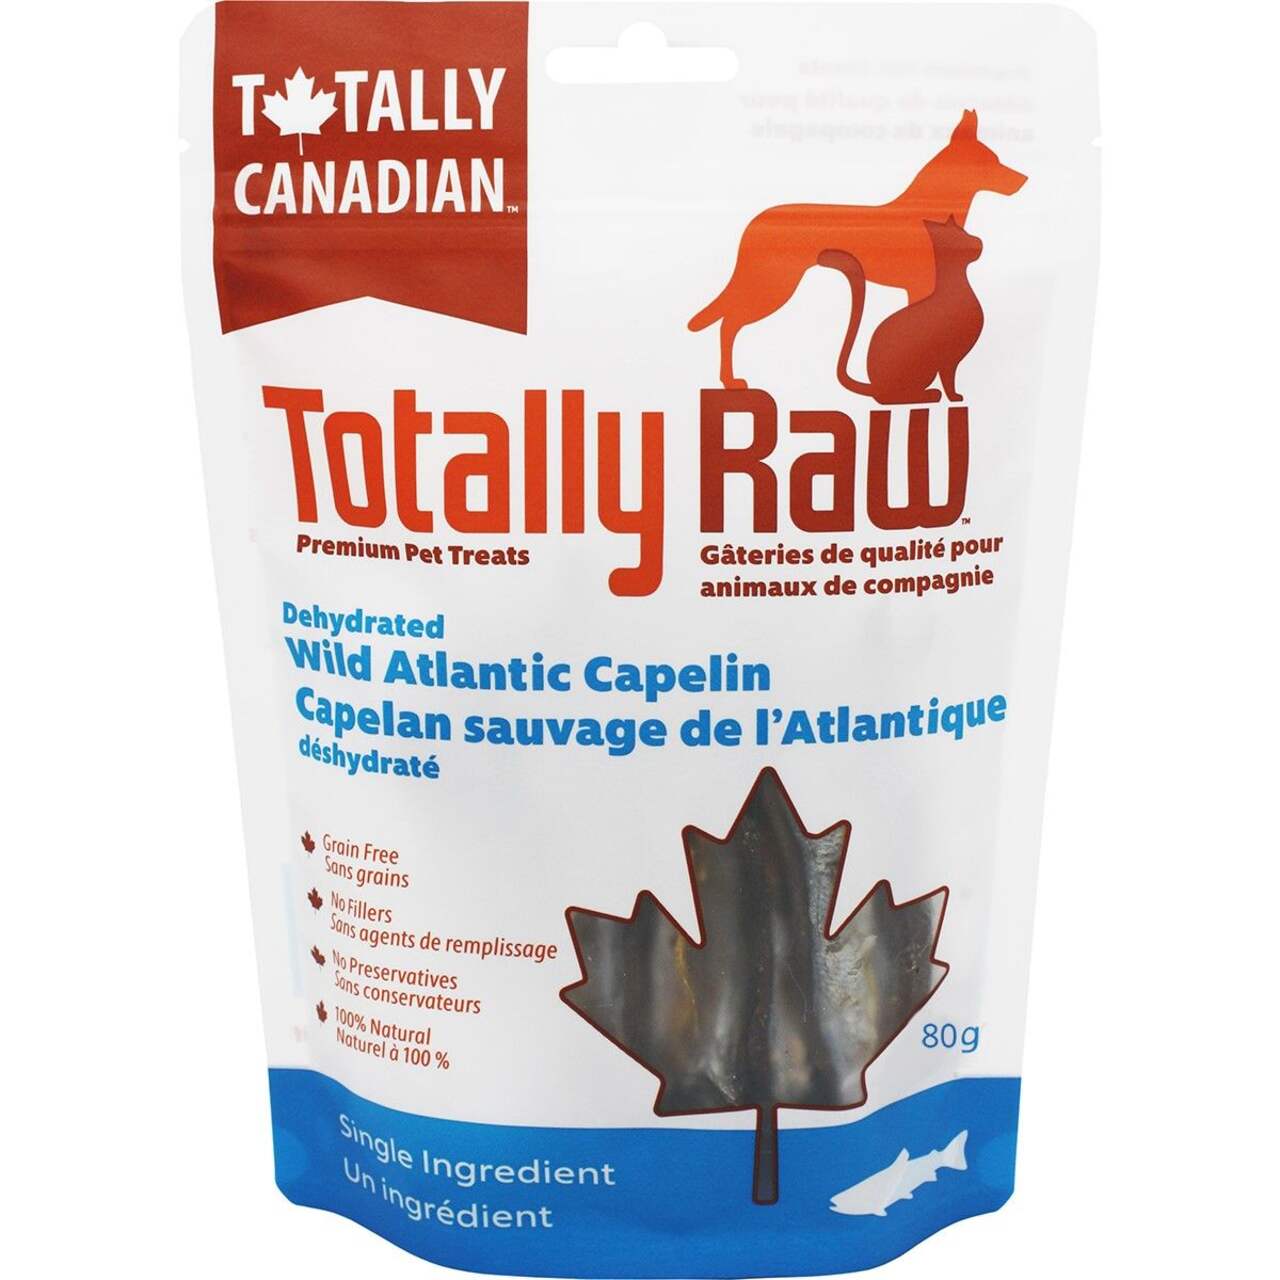 Totally Raw Dehydrated Wild Atlantic CaPelin Dog and Cat Treats